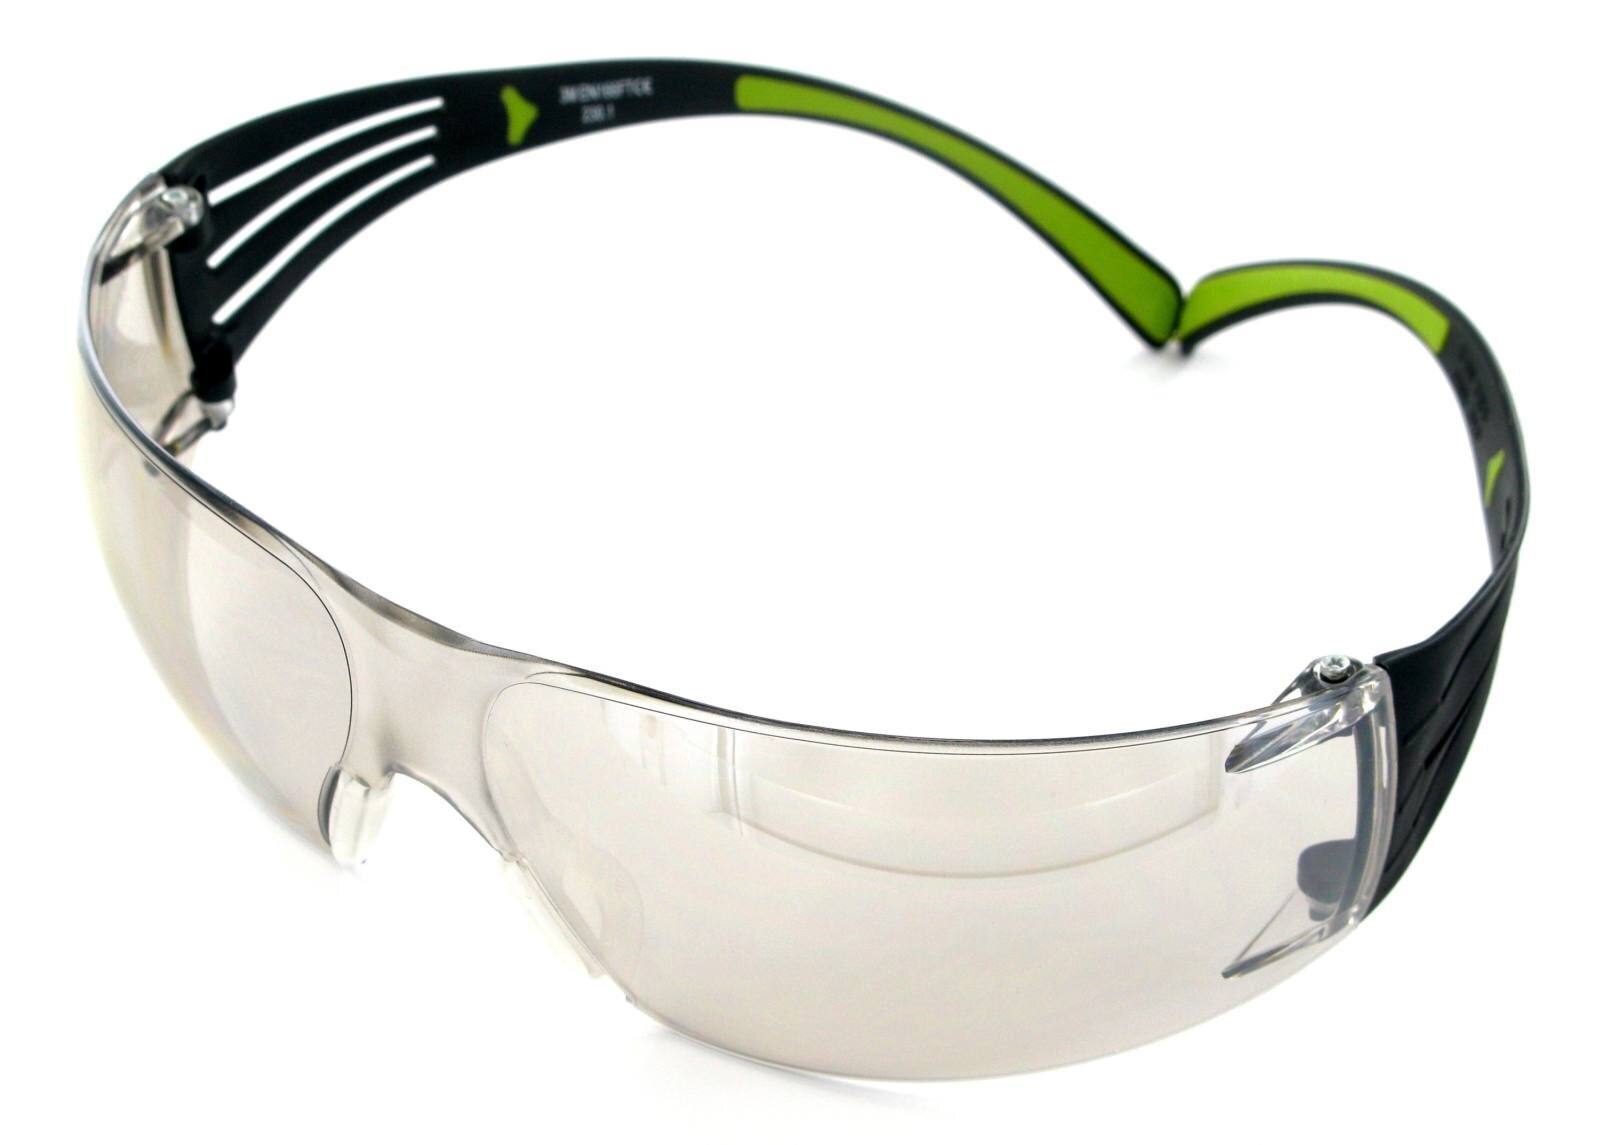 occhi di sicurezza 3M SecureFit 400, aste nere/verdi, rivestimento antigraffio, lenti a specchio per uso interno/esterno, SF410AS-EU